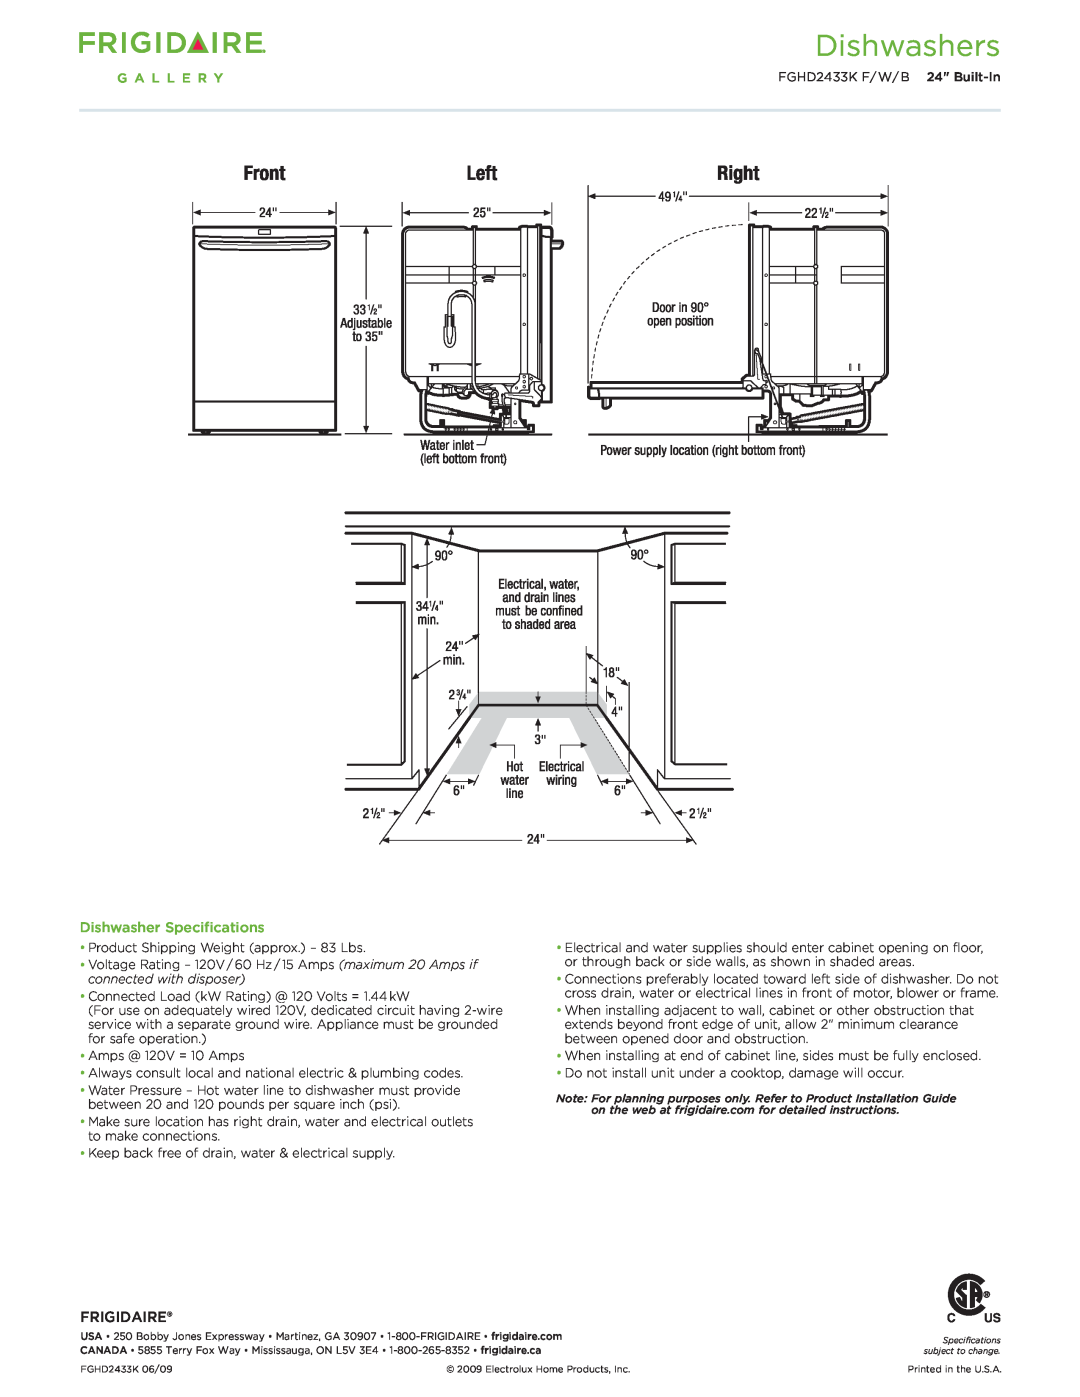 Frigidaire FGHD2433K F/W/B dimensions Dishwasher Specifications, Frigidaire, Dishwashers 